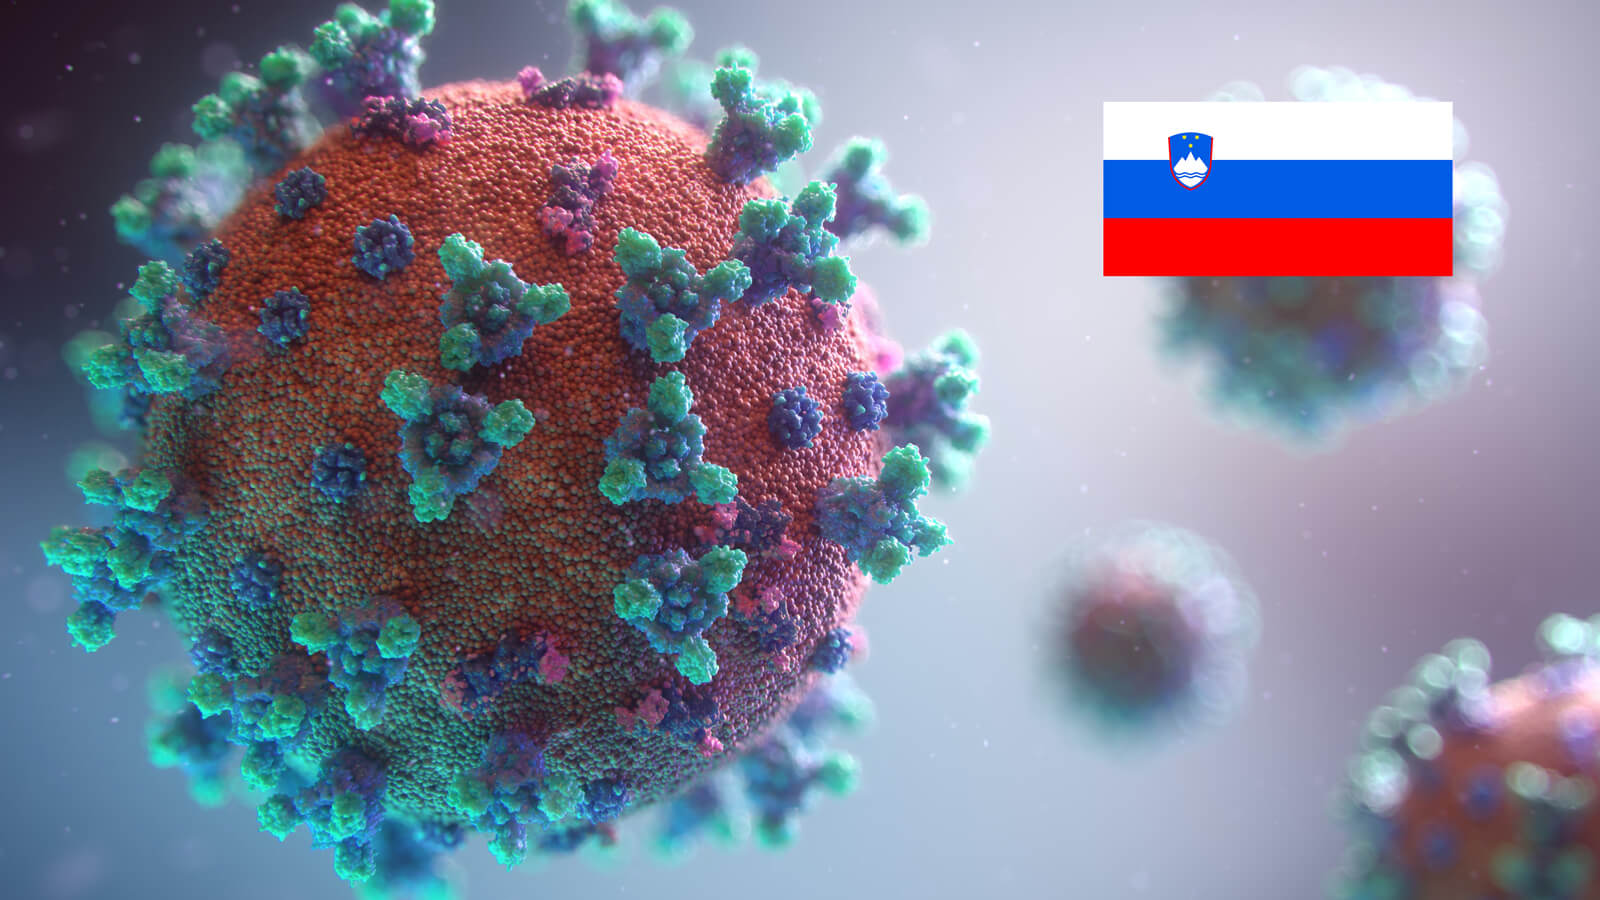 Darstellung Corona Virus mit slowenischer Flagge oben rechts